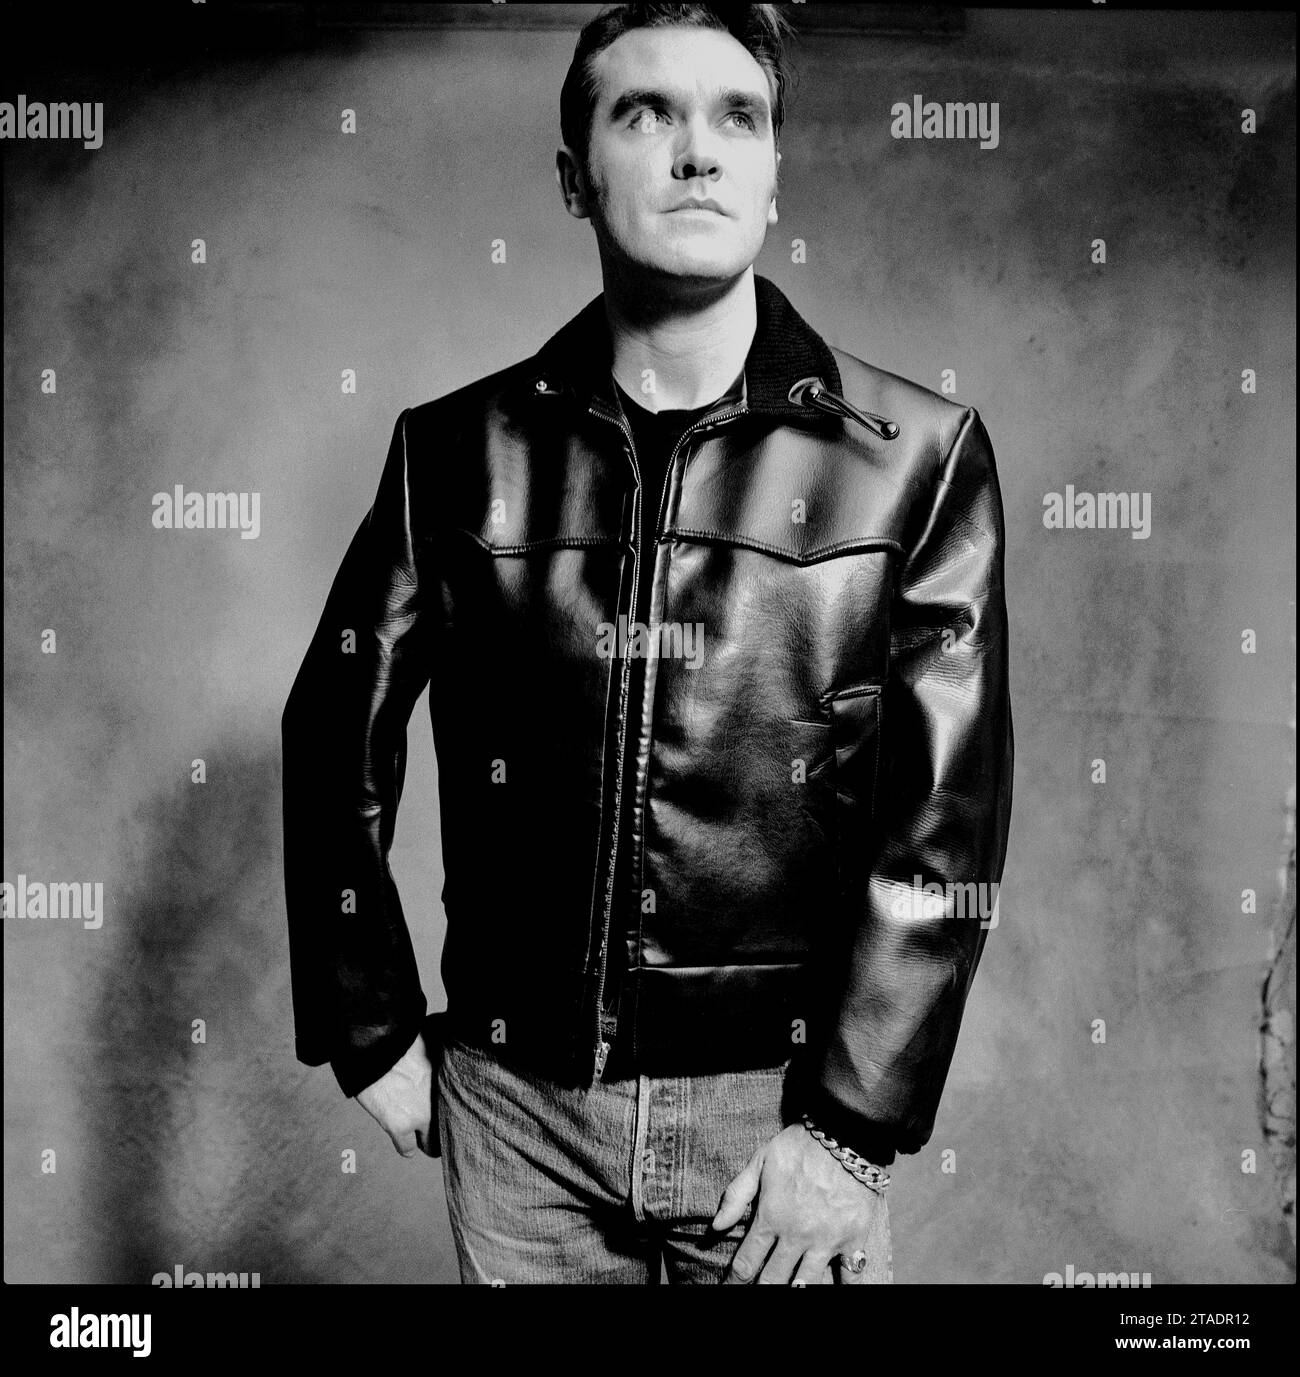 Potente ritratto a metà foto in bianco e nero della leggendaria rockstar, cantautore Morrissey in giacca di pelle e jeans blu per promuovere il suo singolo "Sunny" nel 1995 per Parlophone Records. Foto Stock